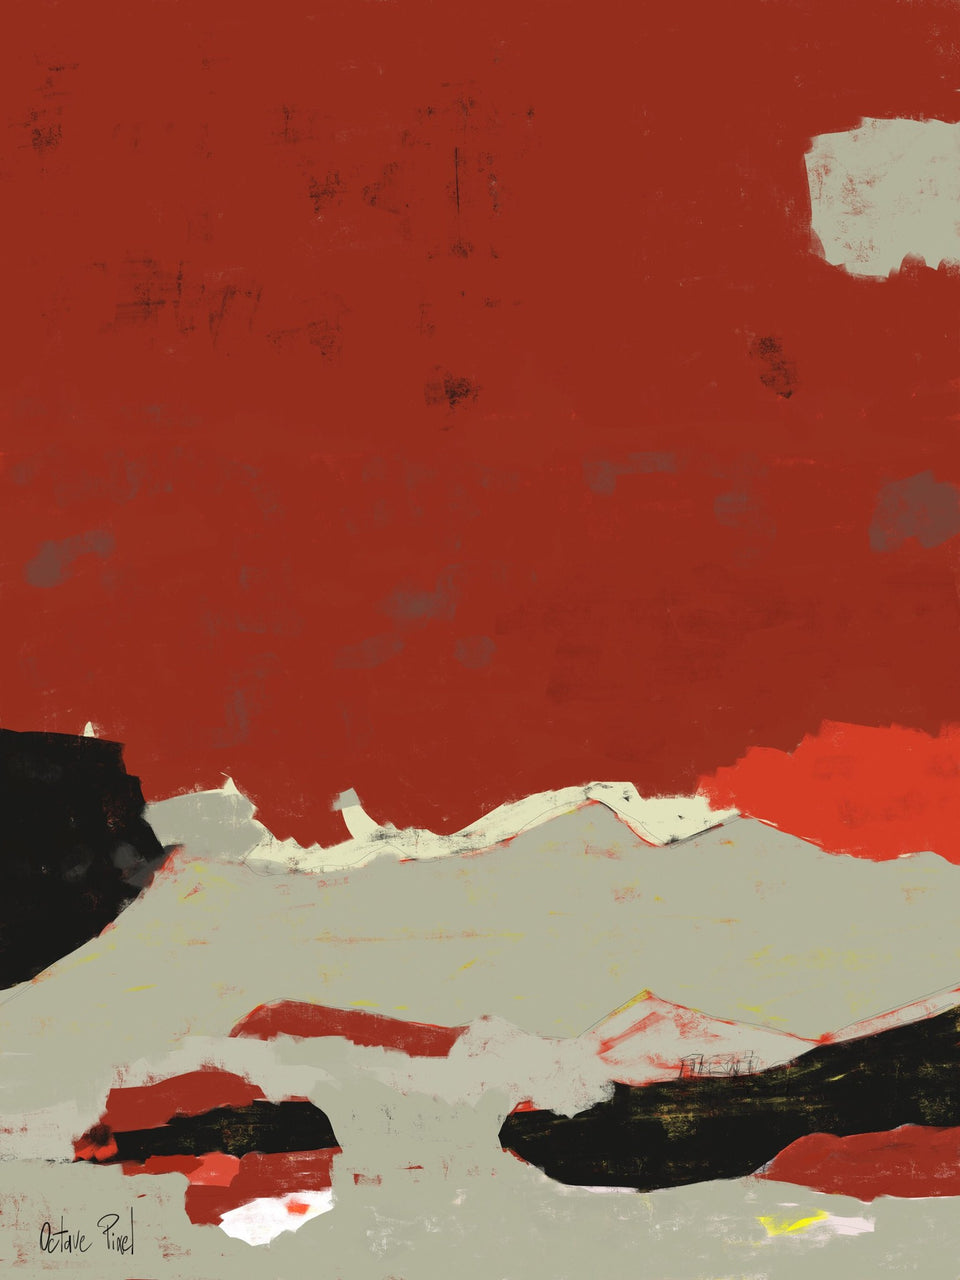  Provence - tableau abstrait rouge ocre - Tableau contemporain  artiste peintre Octave Pixel  galerie TACT Art abstrait & contemporain